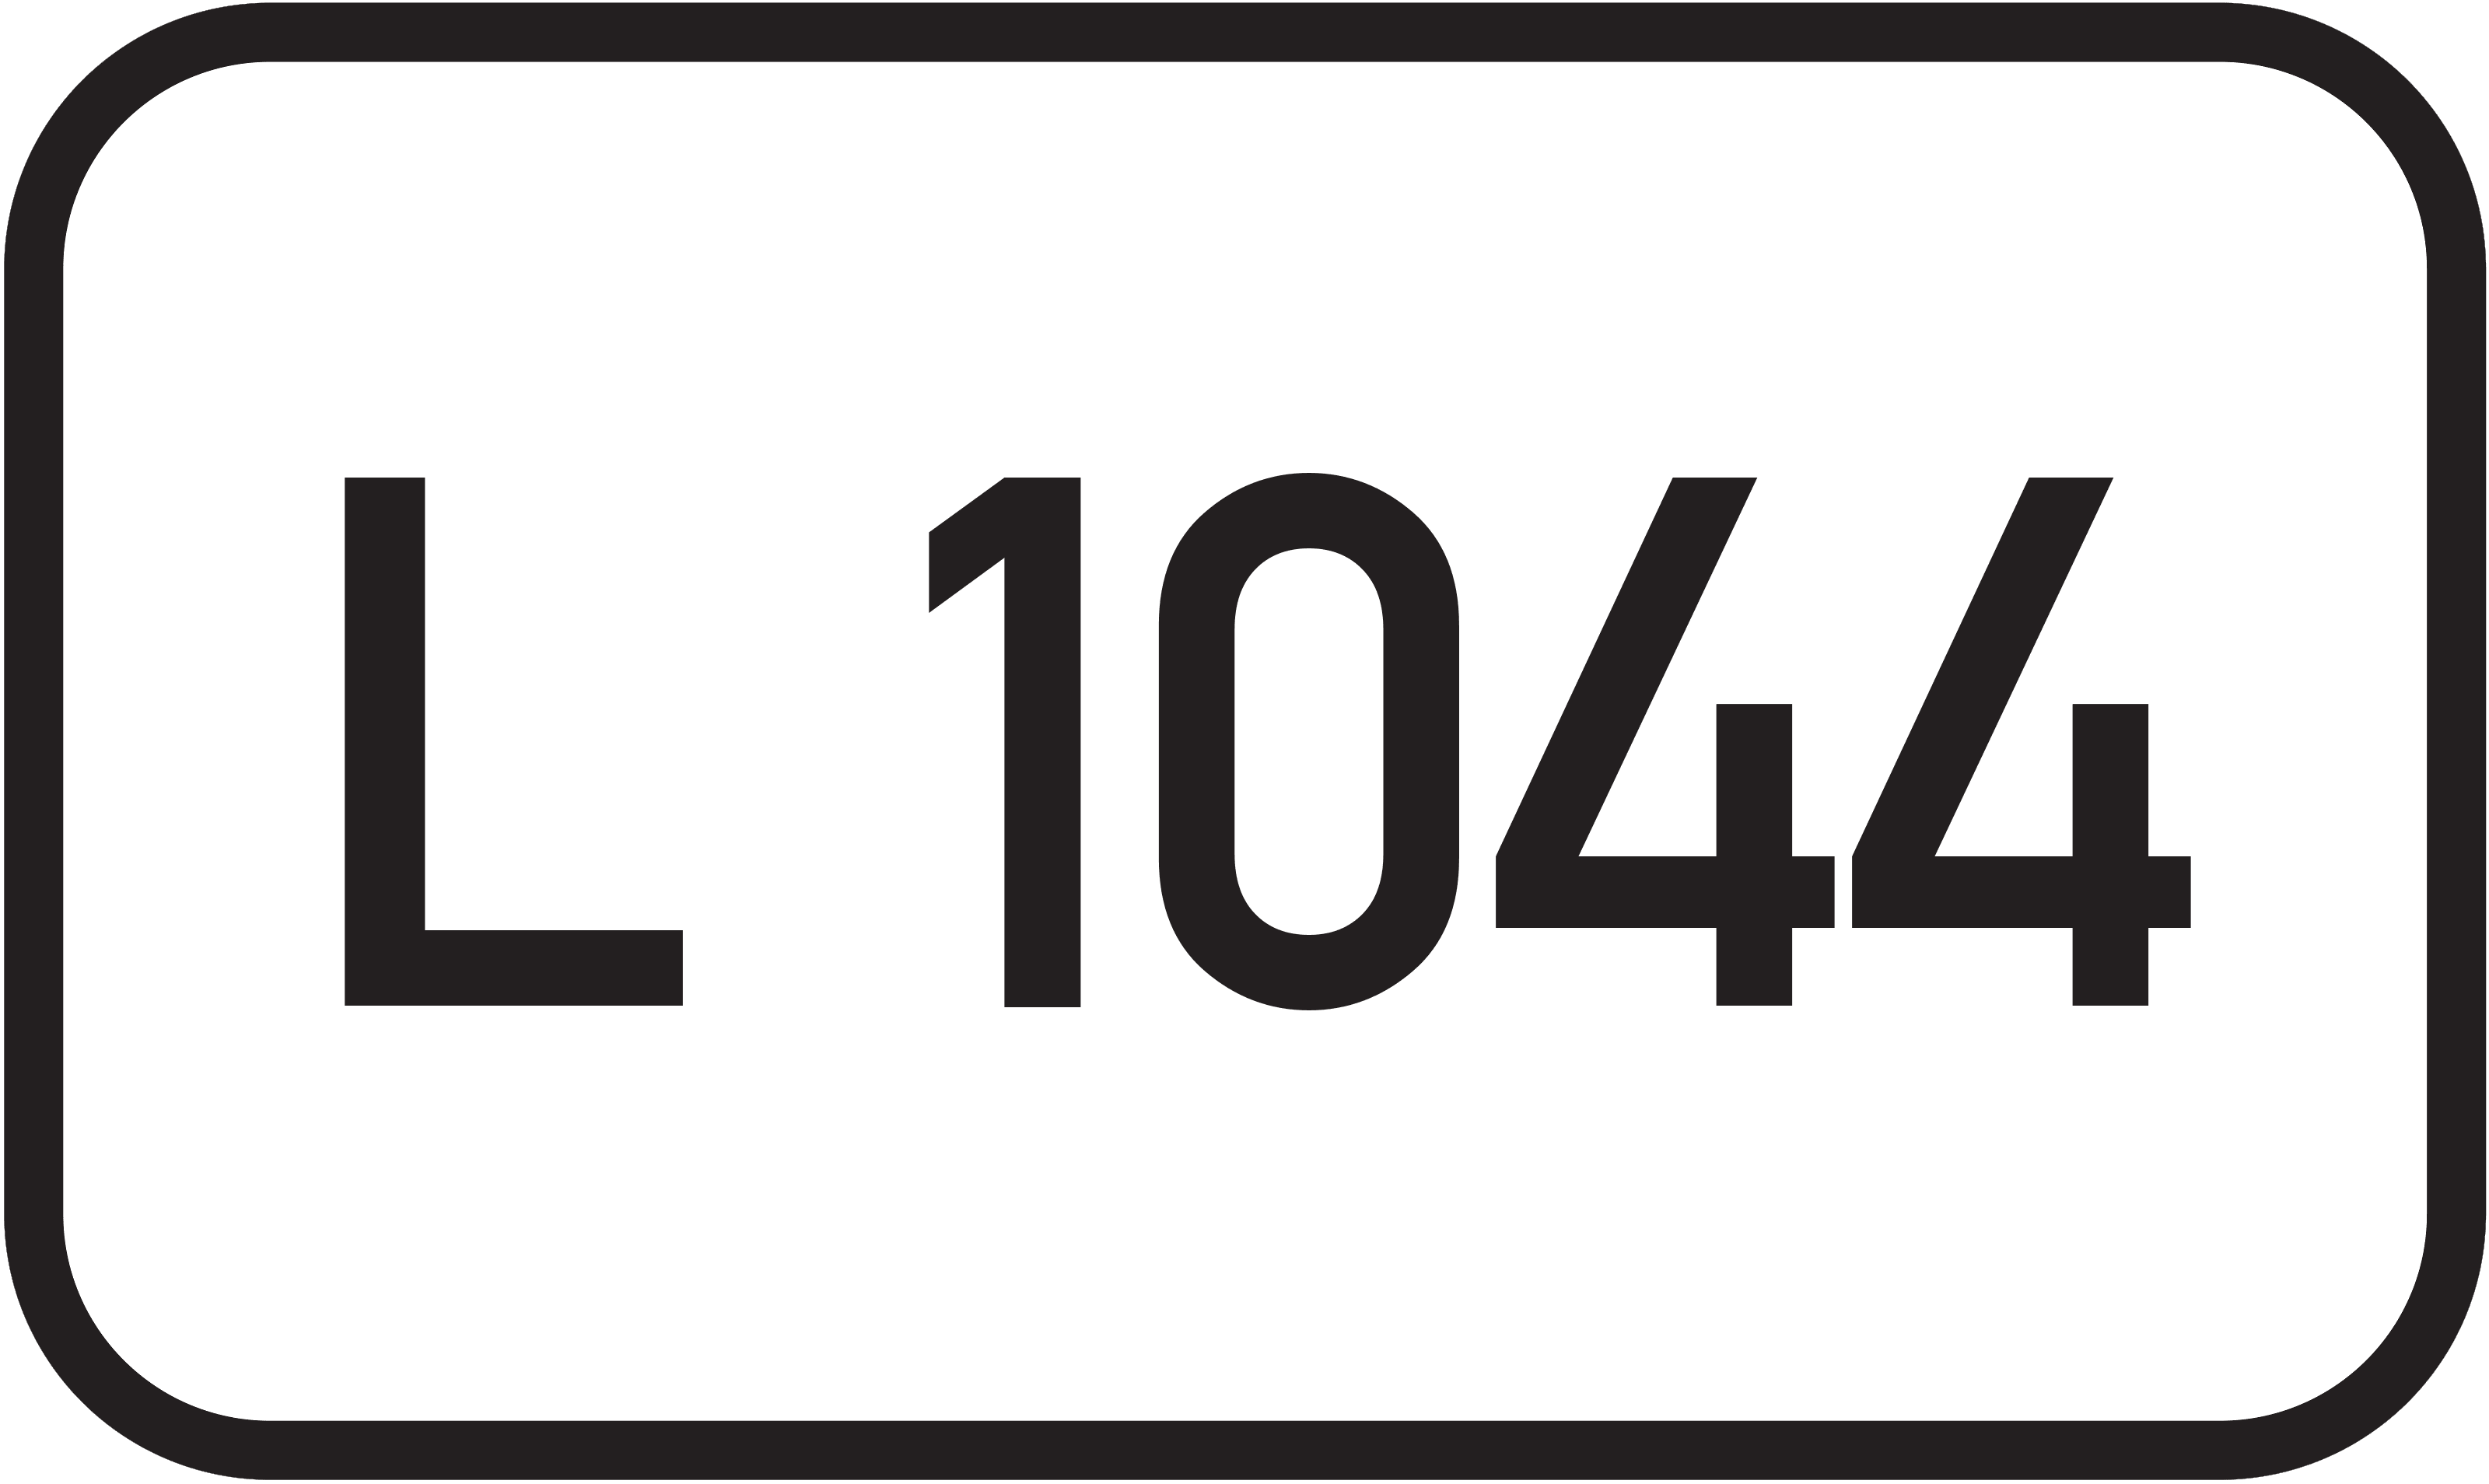 Landesstraße L 1044